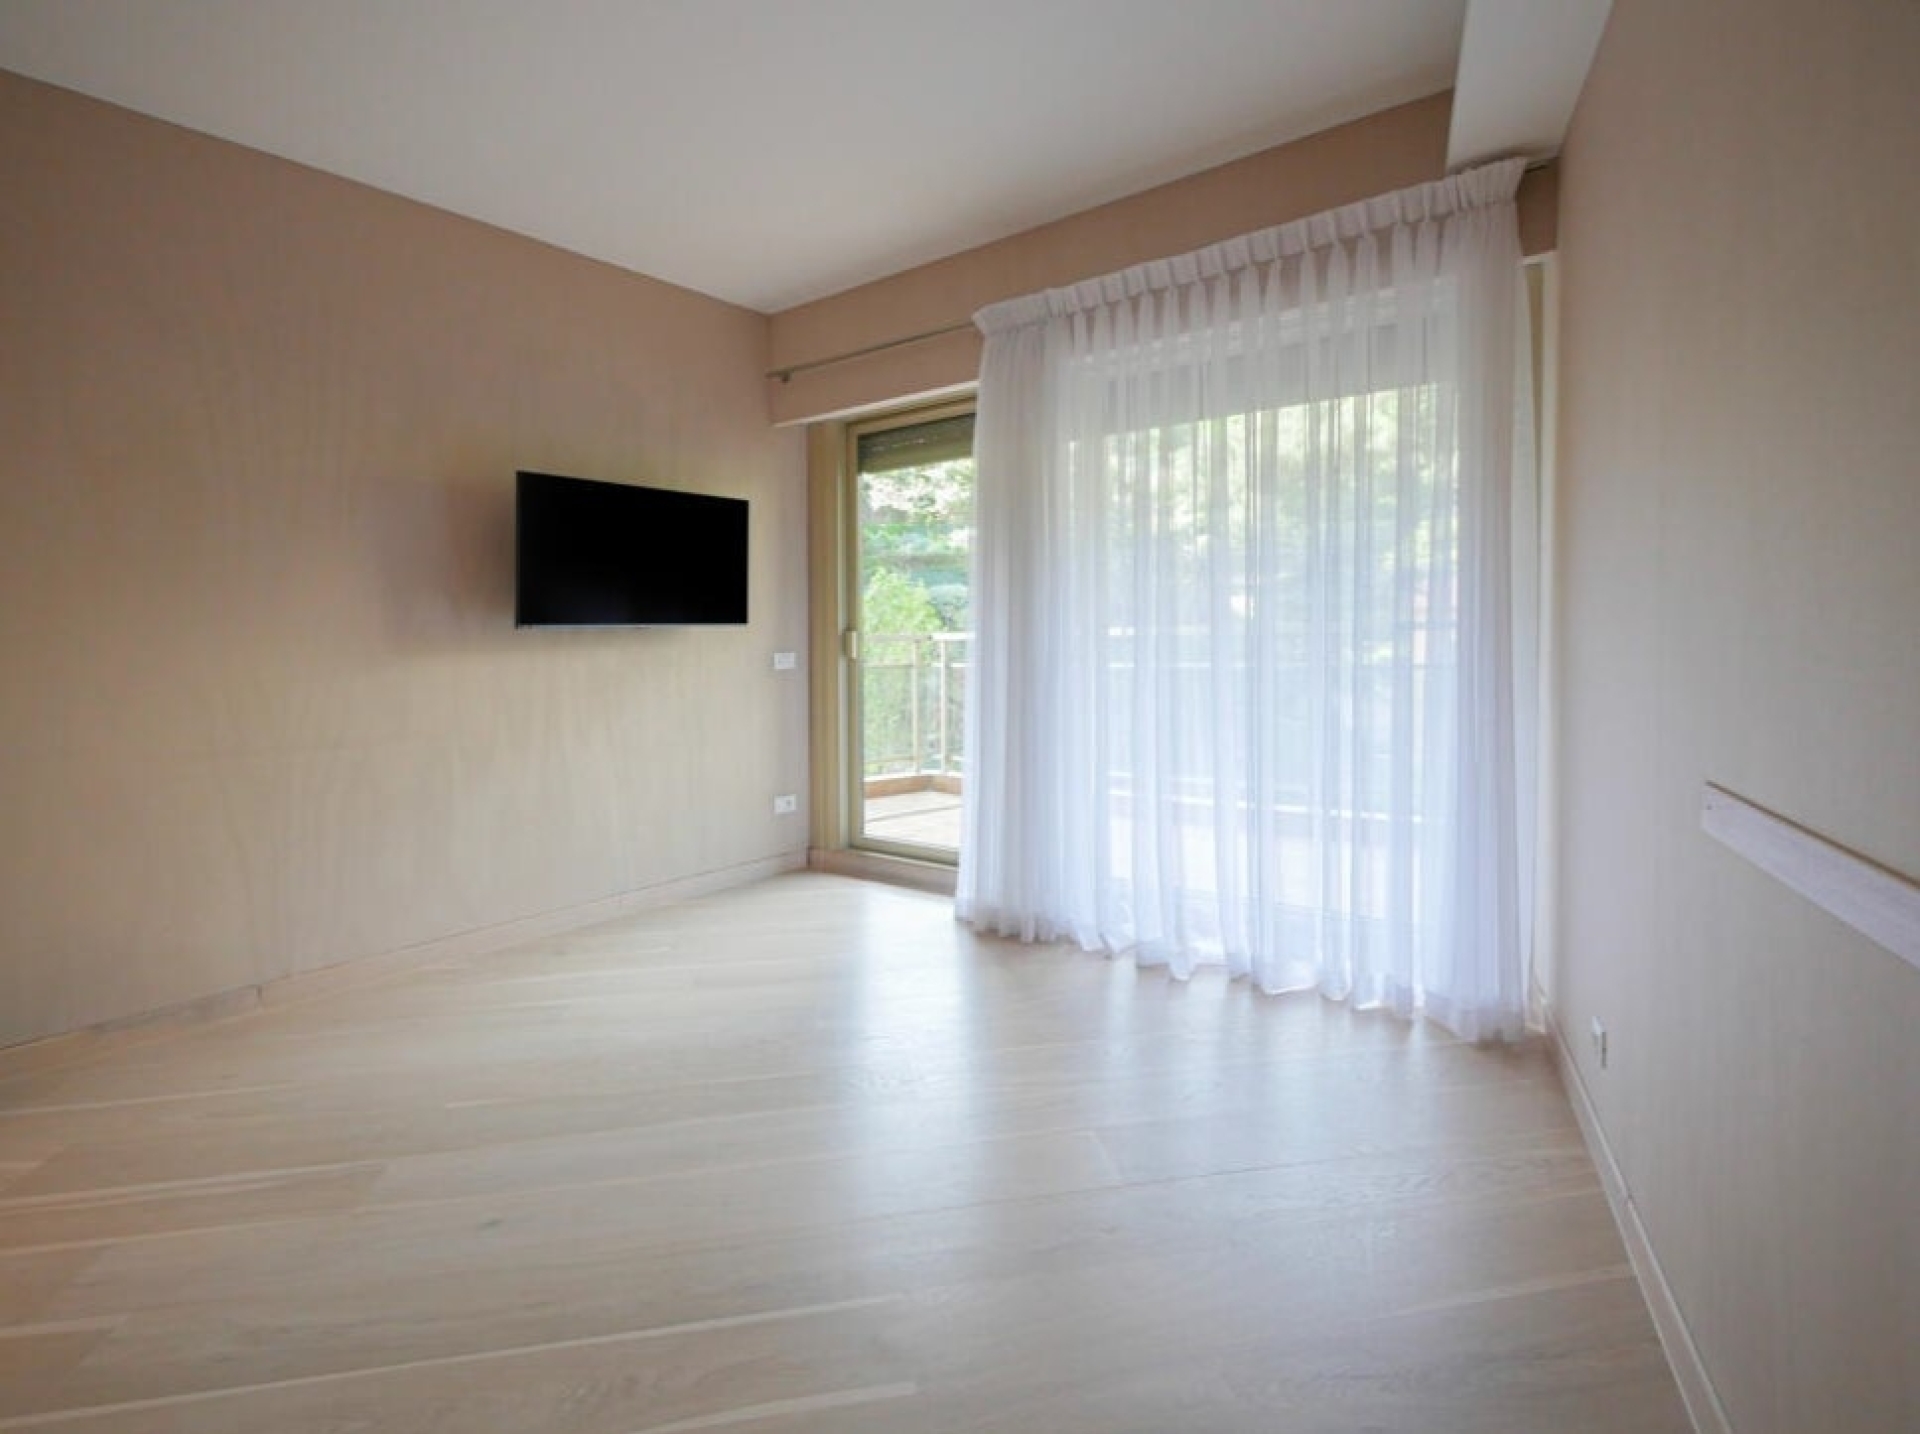 Dotta Appartement de 4 pieces a vendre - ANNONCIADE - La Rousse - Monaco - imgimage1